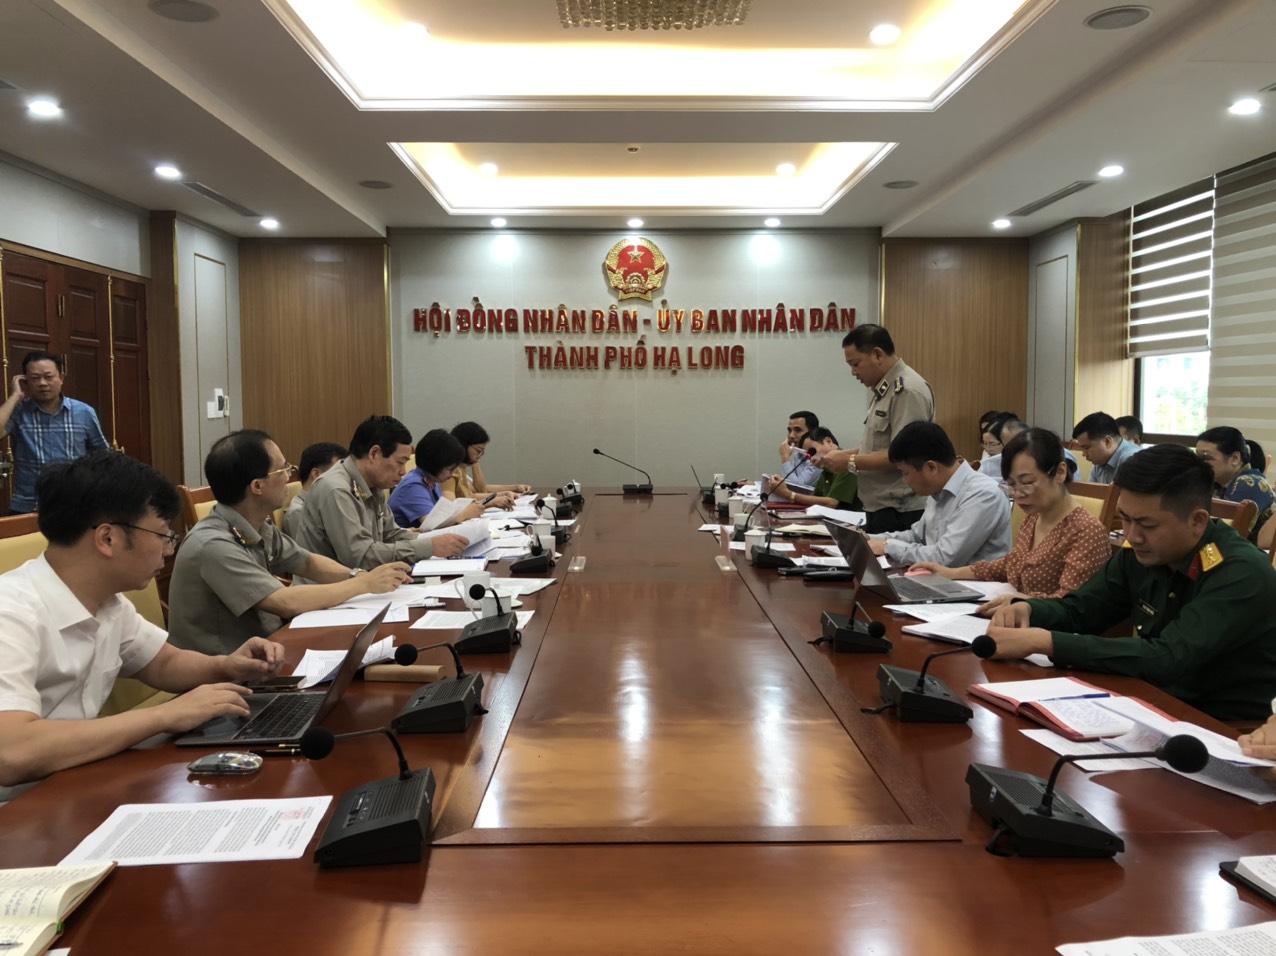 Ban chỉ đạo THADS tỉnh Quảng Ninh làm việc với UBND và Ban Chỉ đạo THADS thành phố Hạ Long về việc chấp hành các quy định của pháp luật trong công tác thi hành án dân sự, theo dõi thi hành án hành chính.